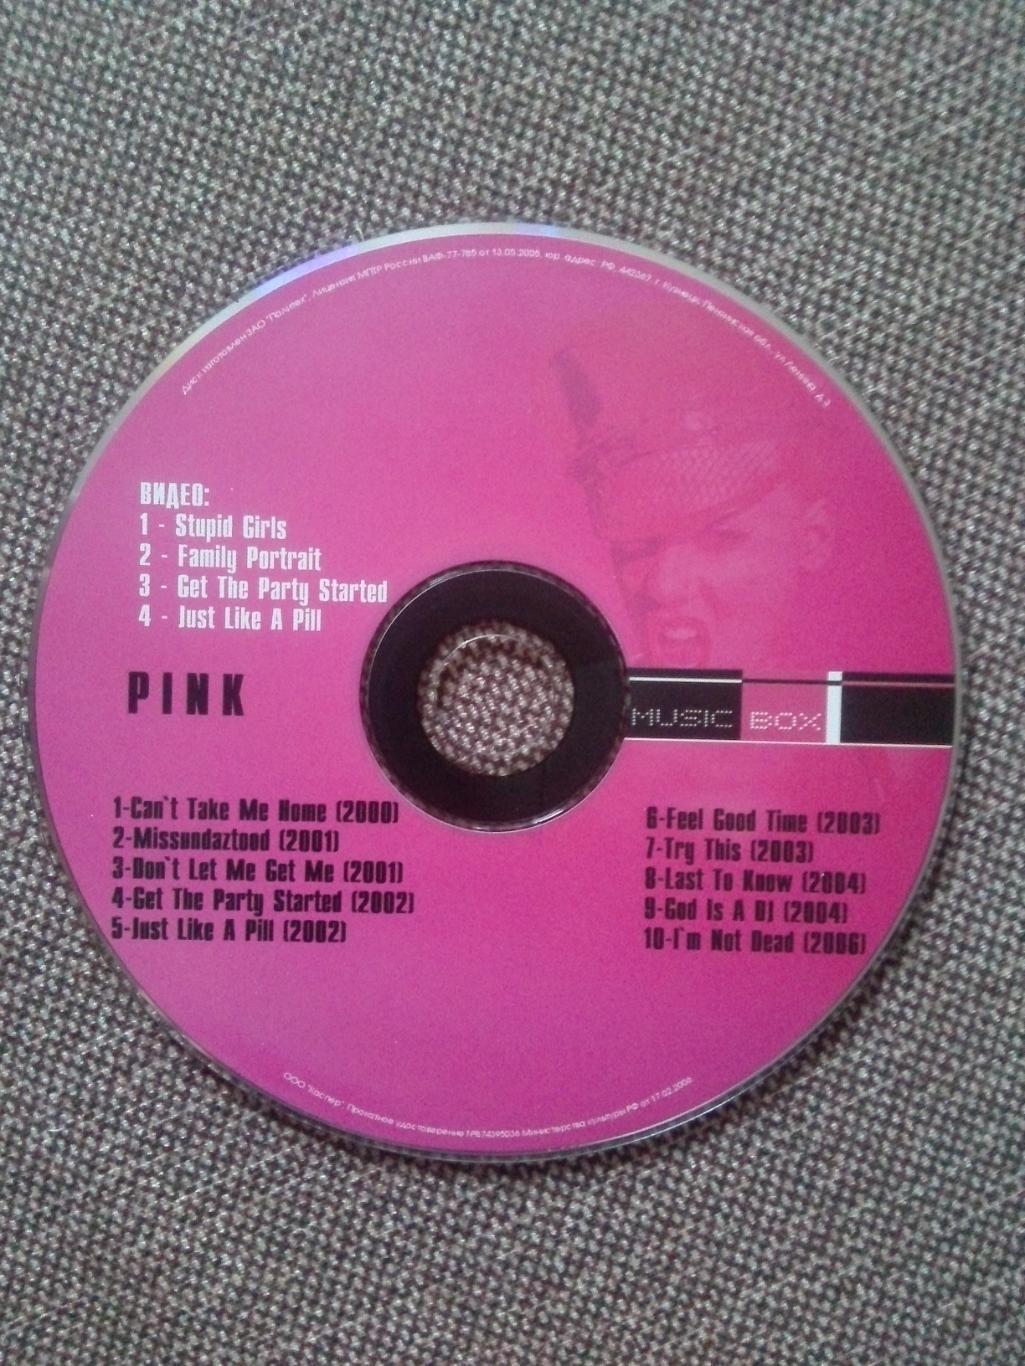 MP - 3 CD диск :Pink2000 - 2006 гг. (10 альбомов + 4 видео) лицензия Рок 2